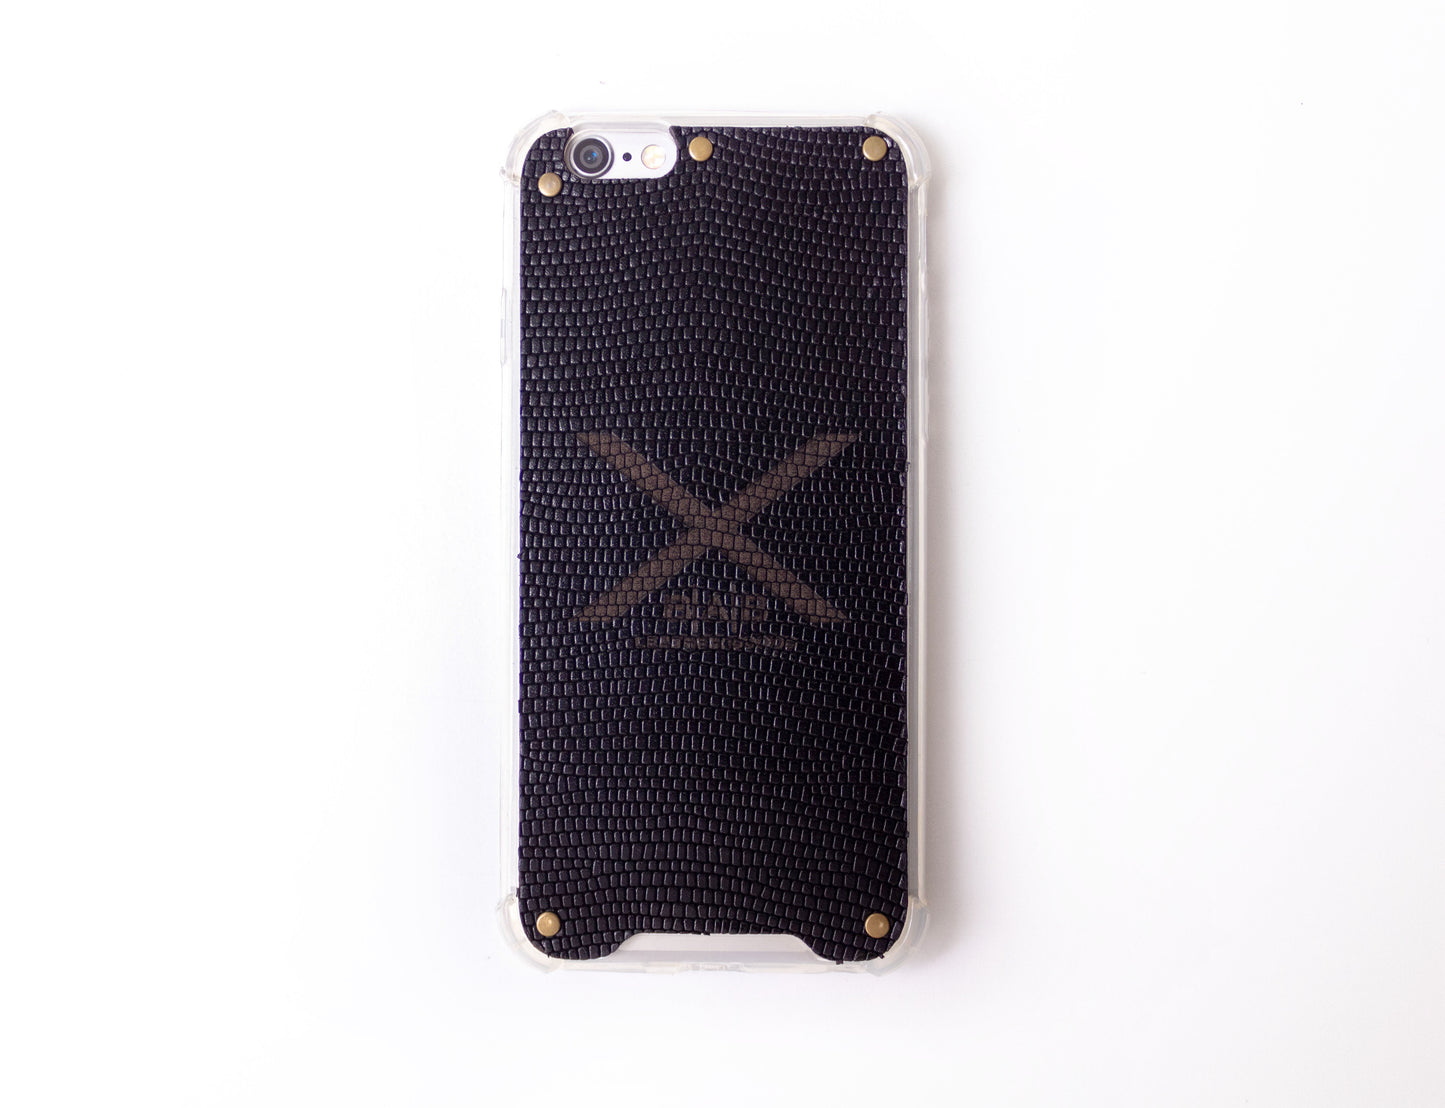 Coque pour iPhone en Cuir Véritable Serpent Noir Texturé, découpée et gravée au laser, 5 Rivets en Bronze.- F36